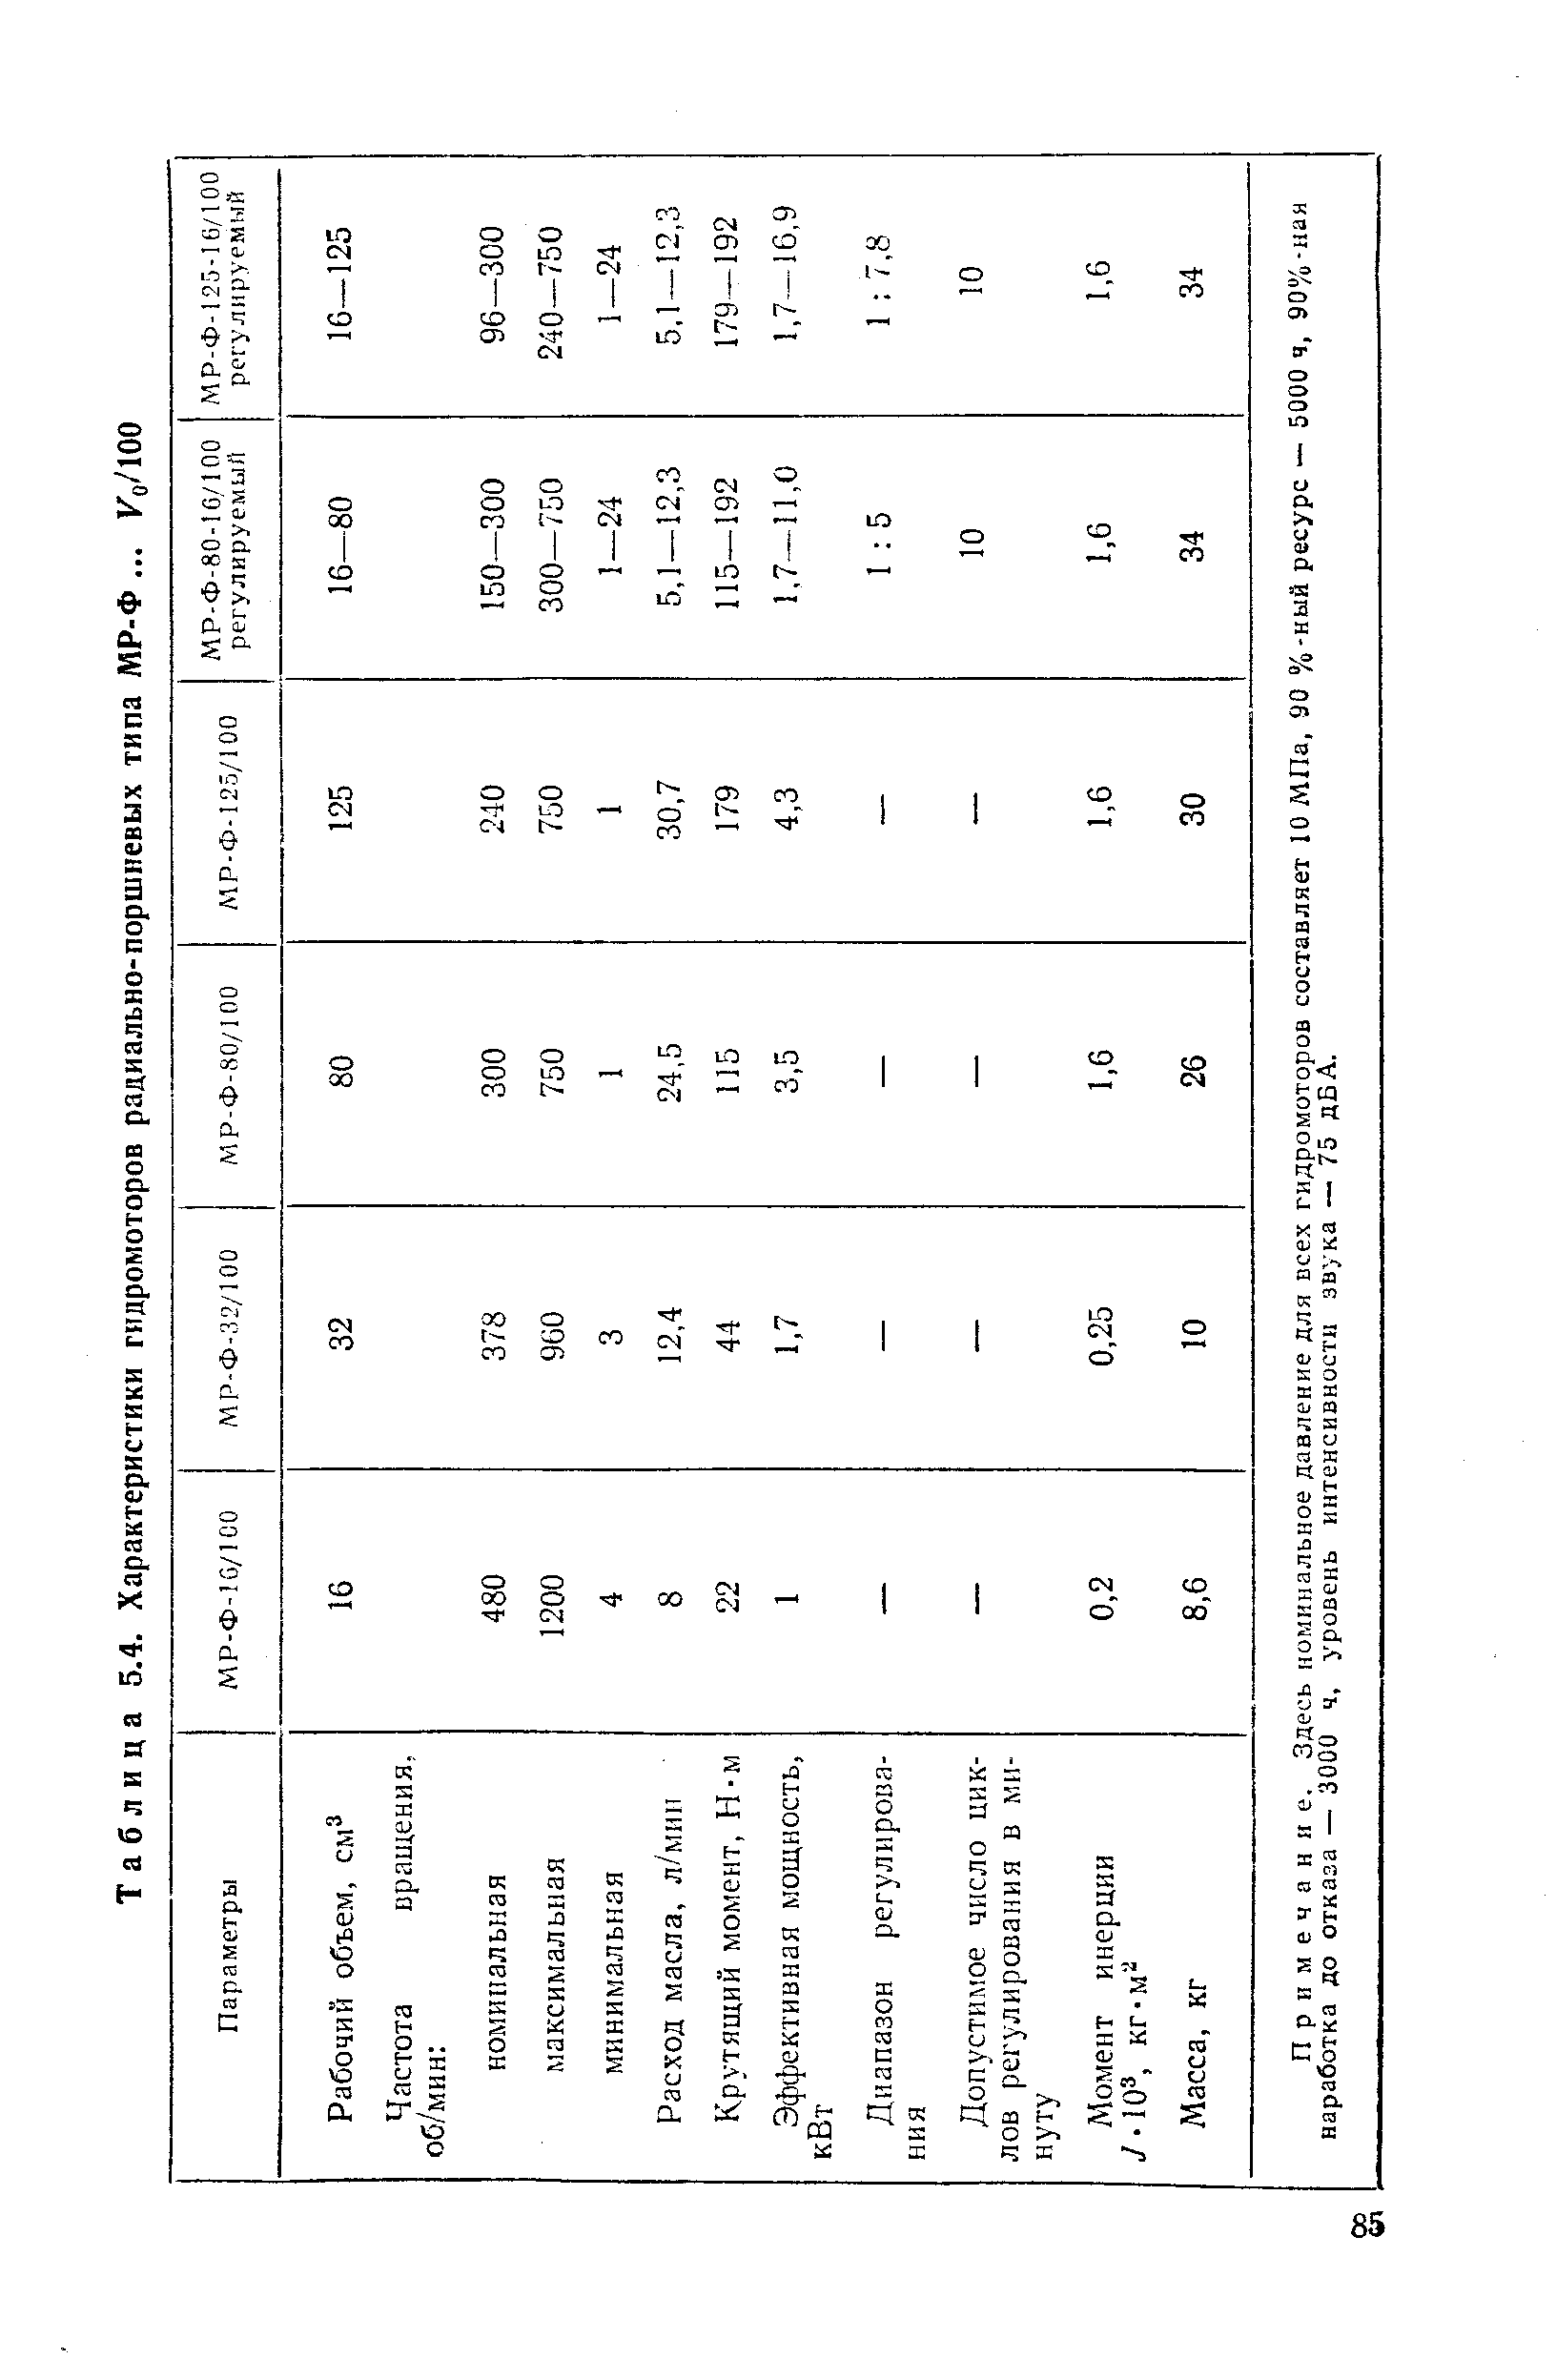 Таблица 5.4. Характеристики гидромоторов радиально-поршневых типа МР-Ф. .. Ко/100
